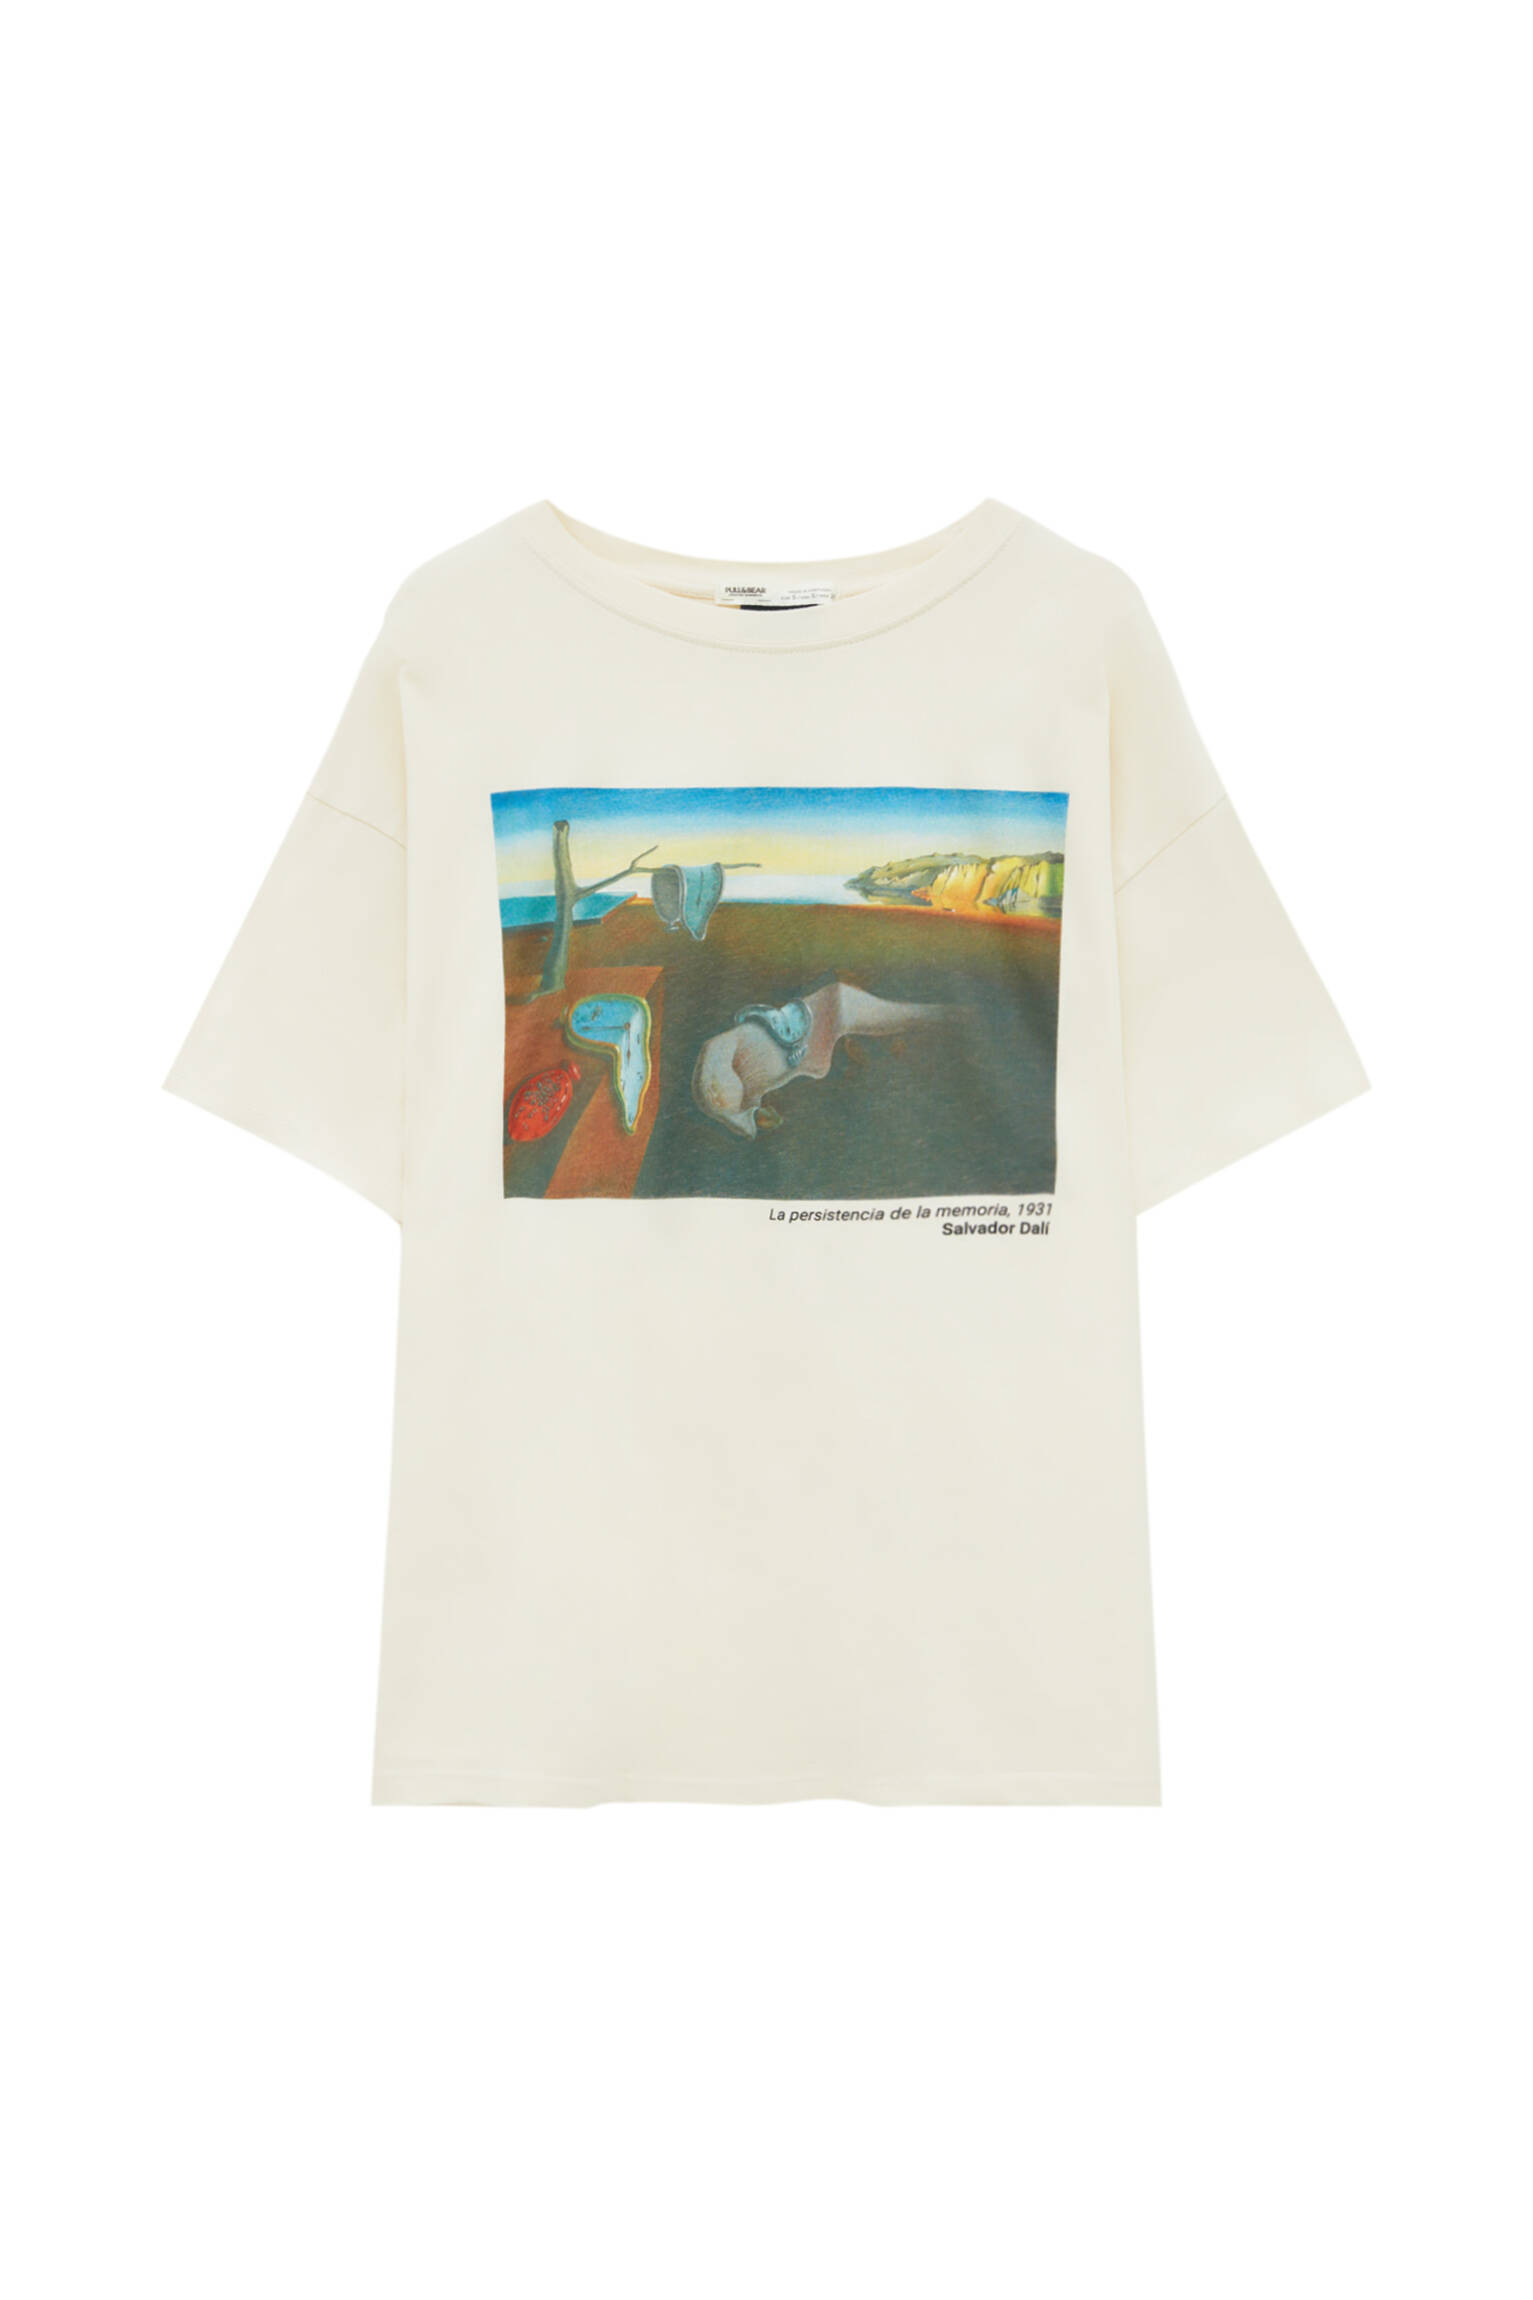 Pull&bear Femme T-shirt à Manches Courtes Et Col Rond Avec Tableau « la Persistance De La Mémoire » De Salvador Dalí. Glace M